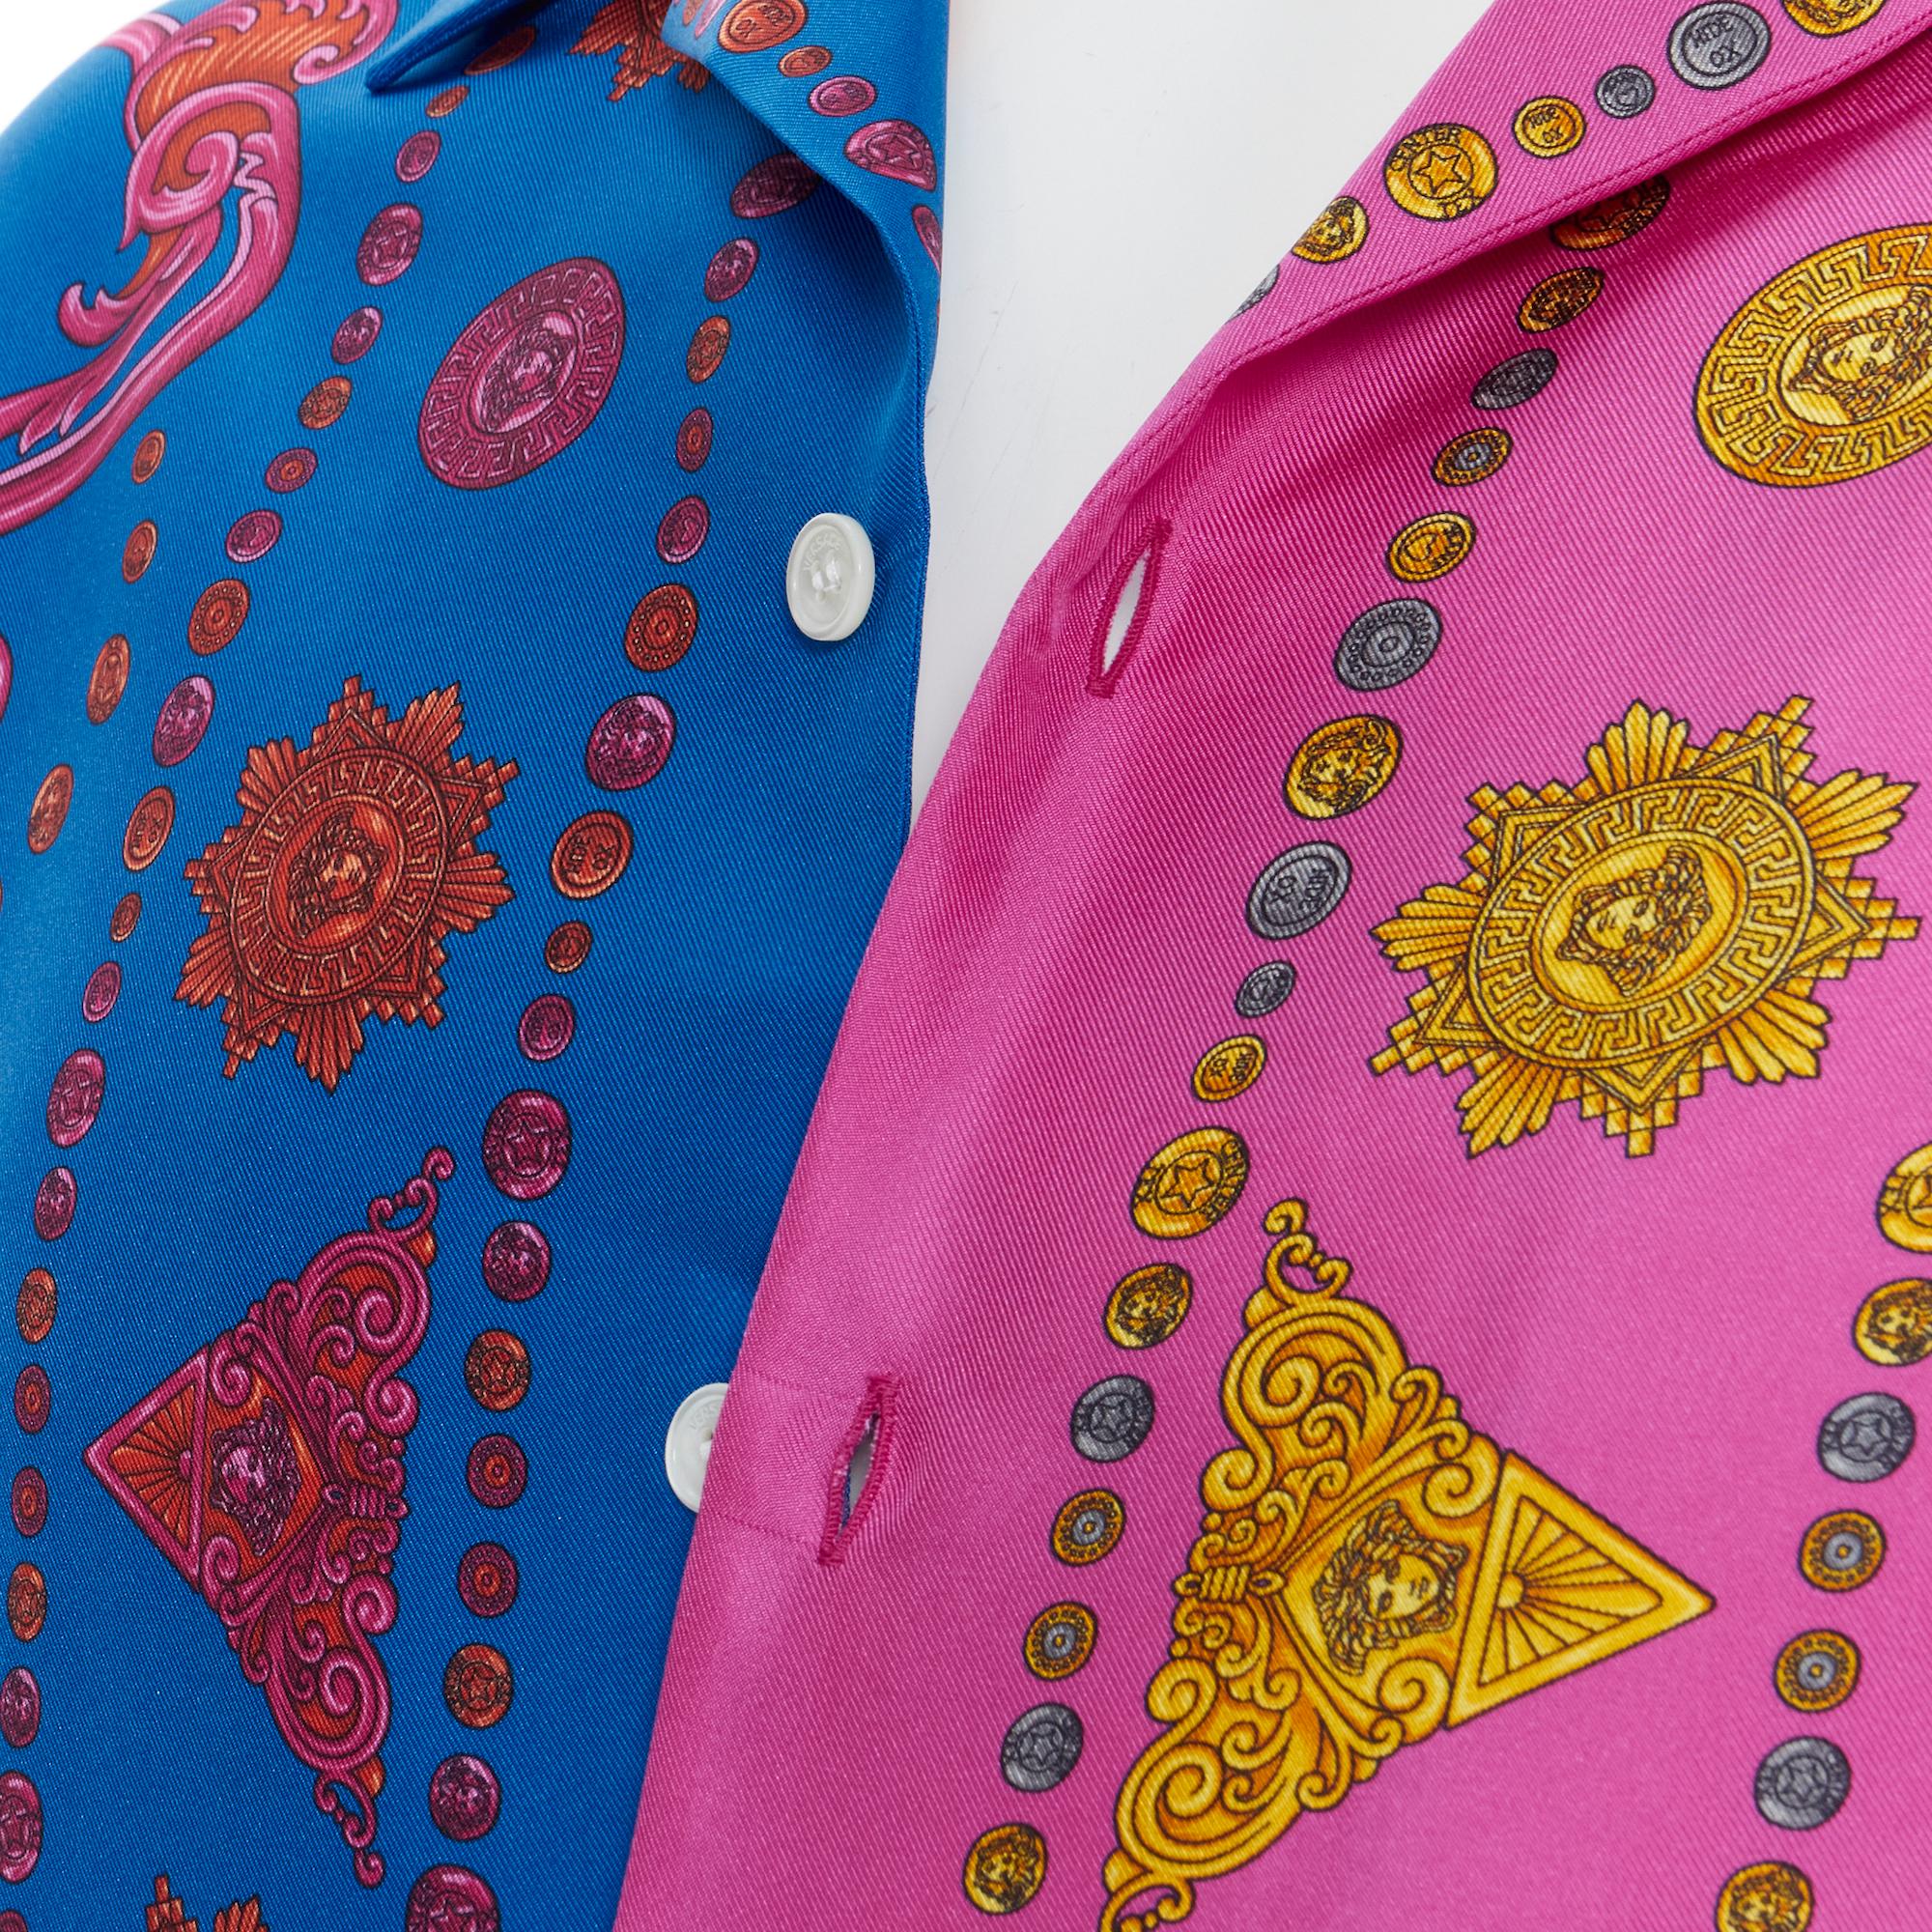 Pink new VERSACE 100% silk blue pink western barocco Medusa bowling shirt EU39 M